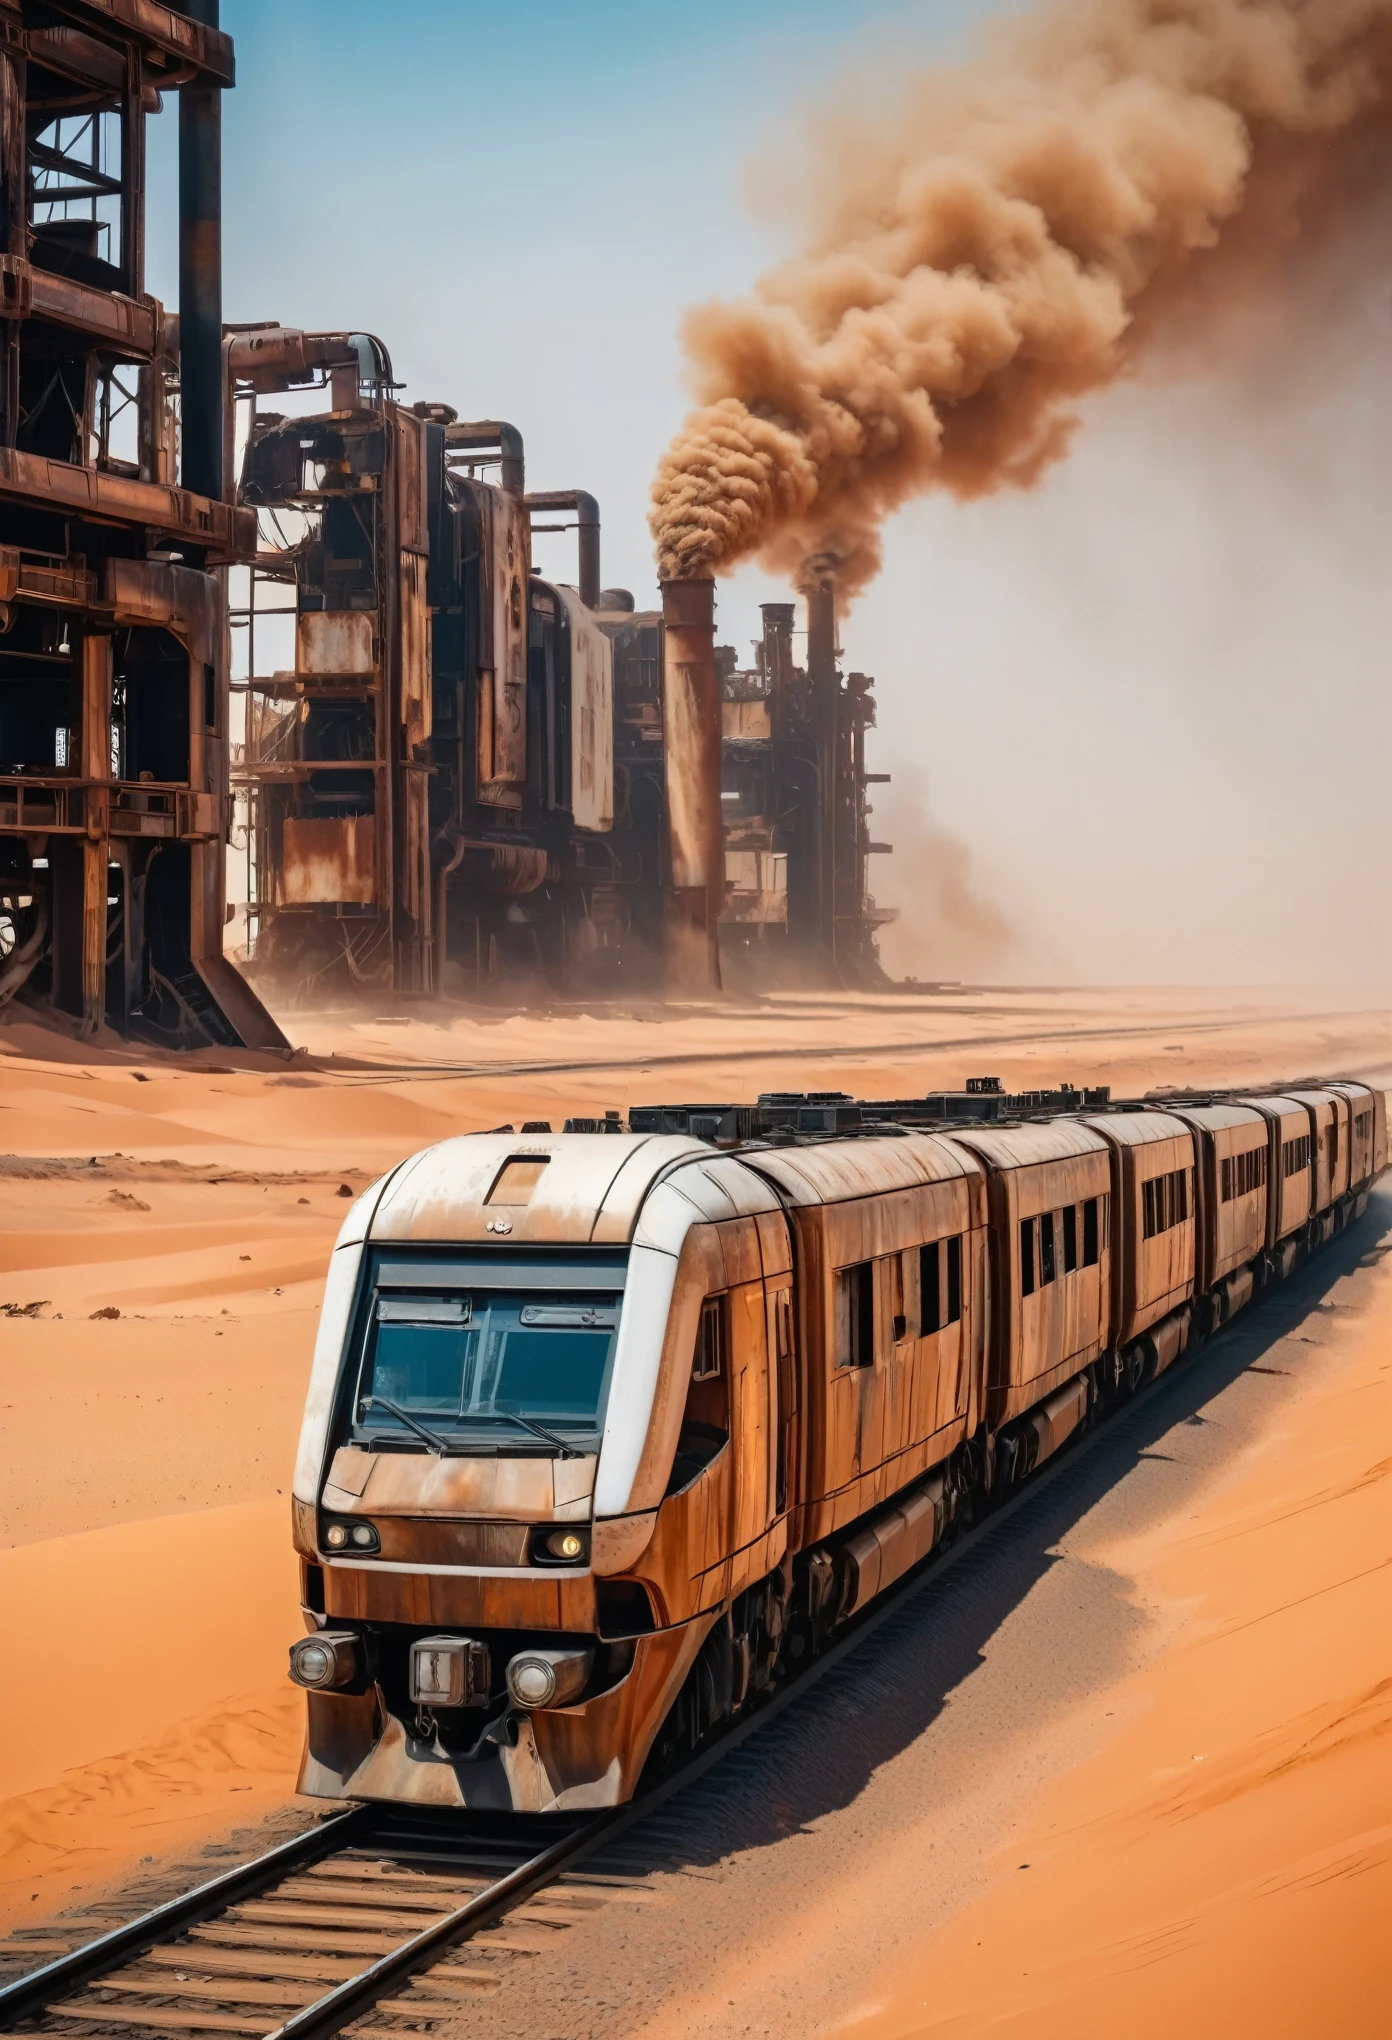 ภาพแนวทแยงของรถไฟสองชั้นที่เป็นสนิมและอนาคตล้ำสมัยและรถไฟโลหะอุตสาหกรรมที่ข้ามทะเลทรายซาฮารา, สภาพแวดล้อมหลังสันทราย, รถไฟแล่นผ่านพื้นที่อุตสาหกรรมที่ถูกทำลายโดยมีหอคอยโลหะสูงพ่นควัน 